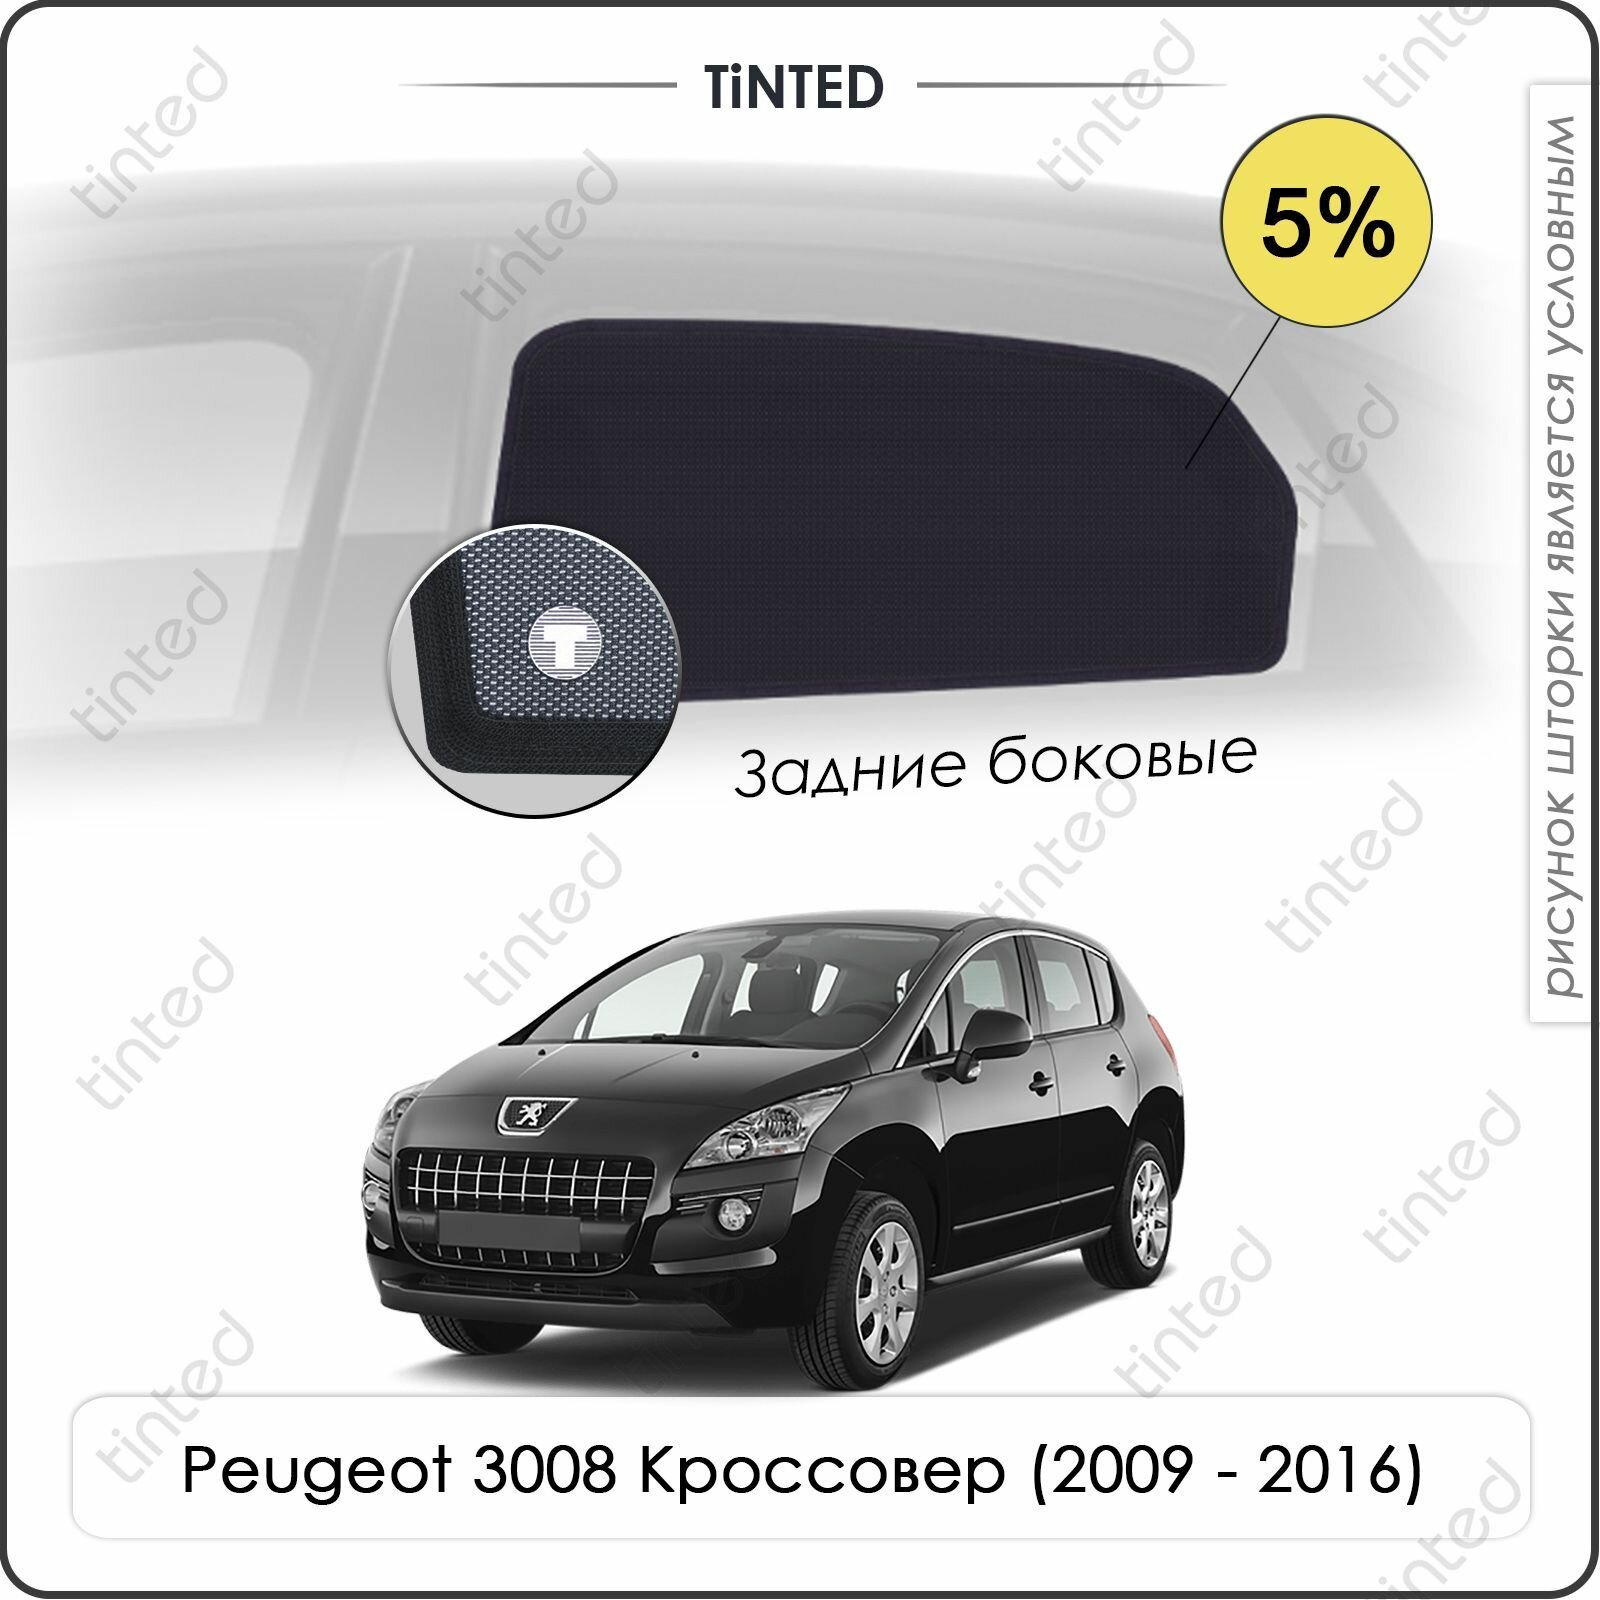 Шторки на автомобиль солнцезащитные Peugeot 3008 Кроссовер 5дв. (2009 - 2016) на задние двери 5%, сетки от солнца в машину пежо 3008, Каркасные автошторки Premium